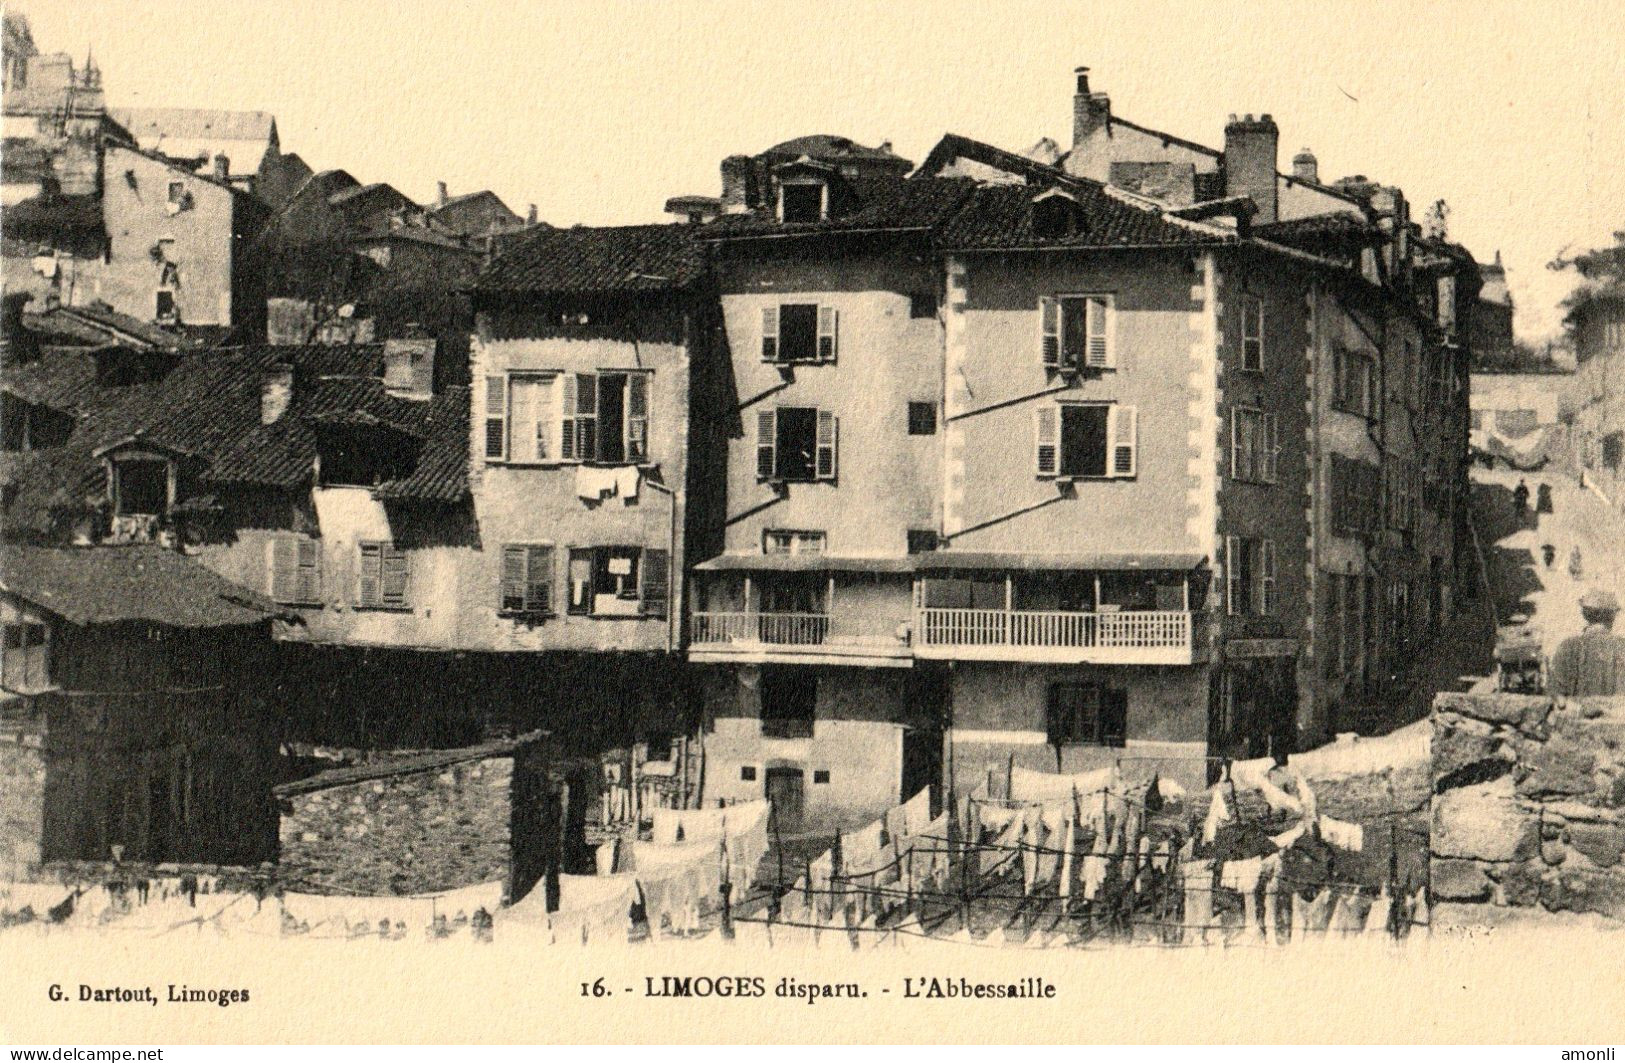 87. HAUTE-VIENNE - LIMOGES Disparu - L'Abbessaille. - Limoges